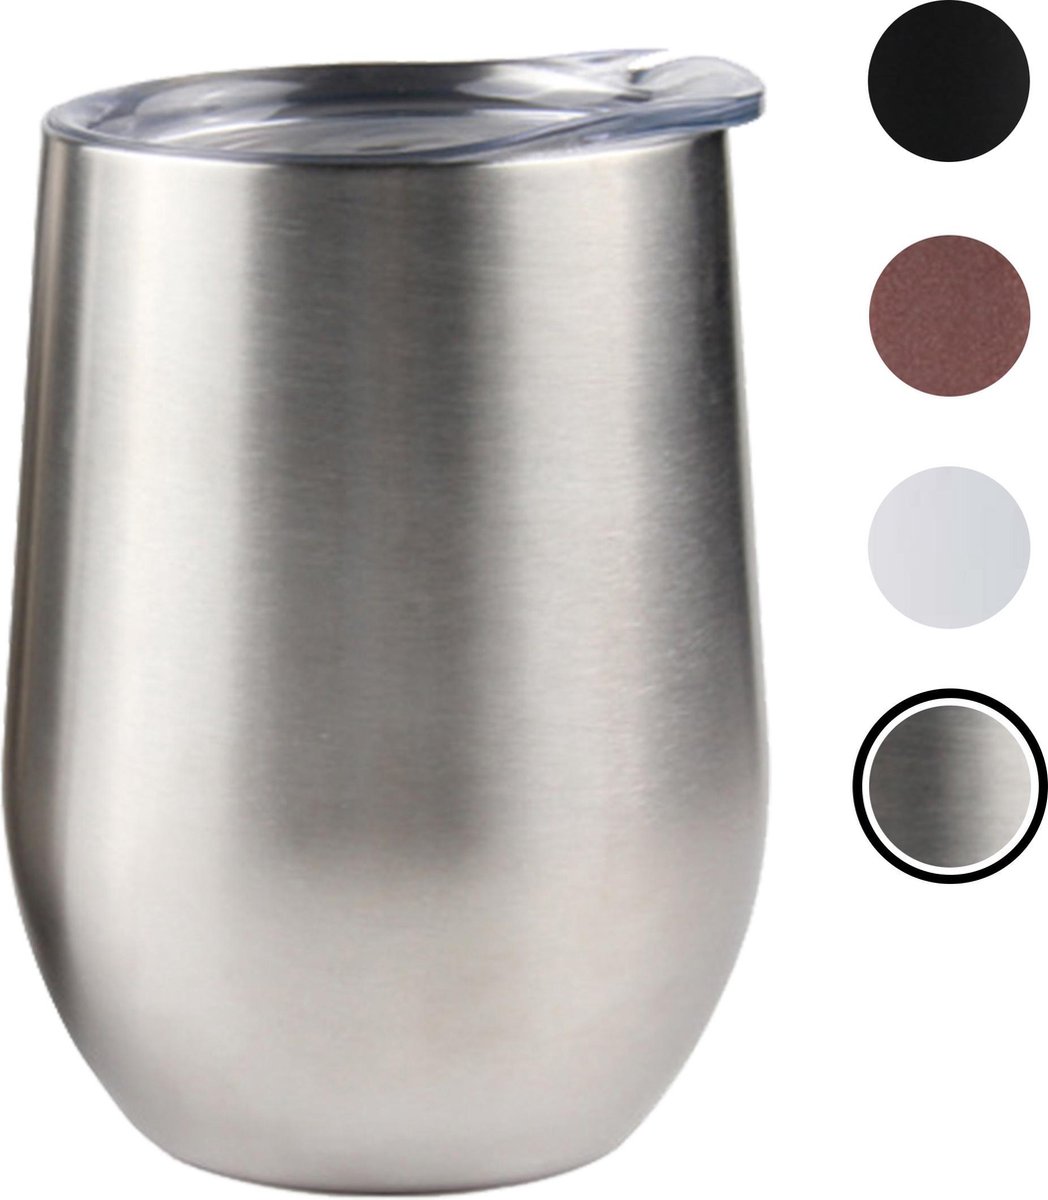 Tumbler Steel Grey - wine tumbler - wijnglas zonder voet - luxe wijnkoeler - RVS - isolerend – cocktail drinkbeker - 350ml - kleur - duurzaam - met deksel